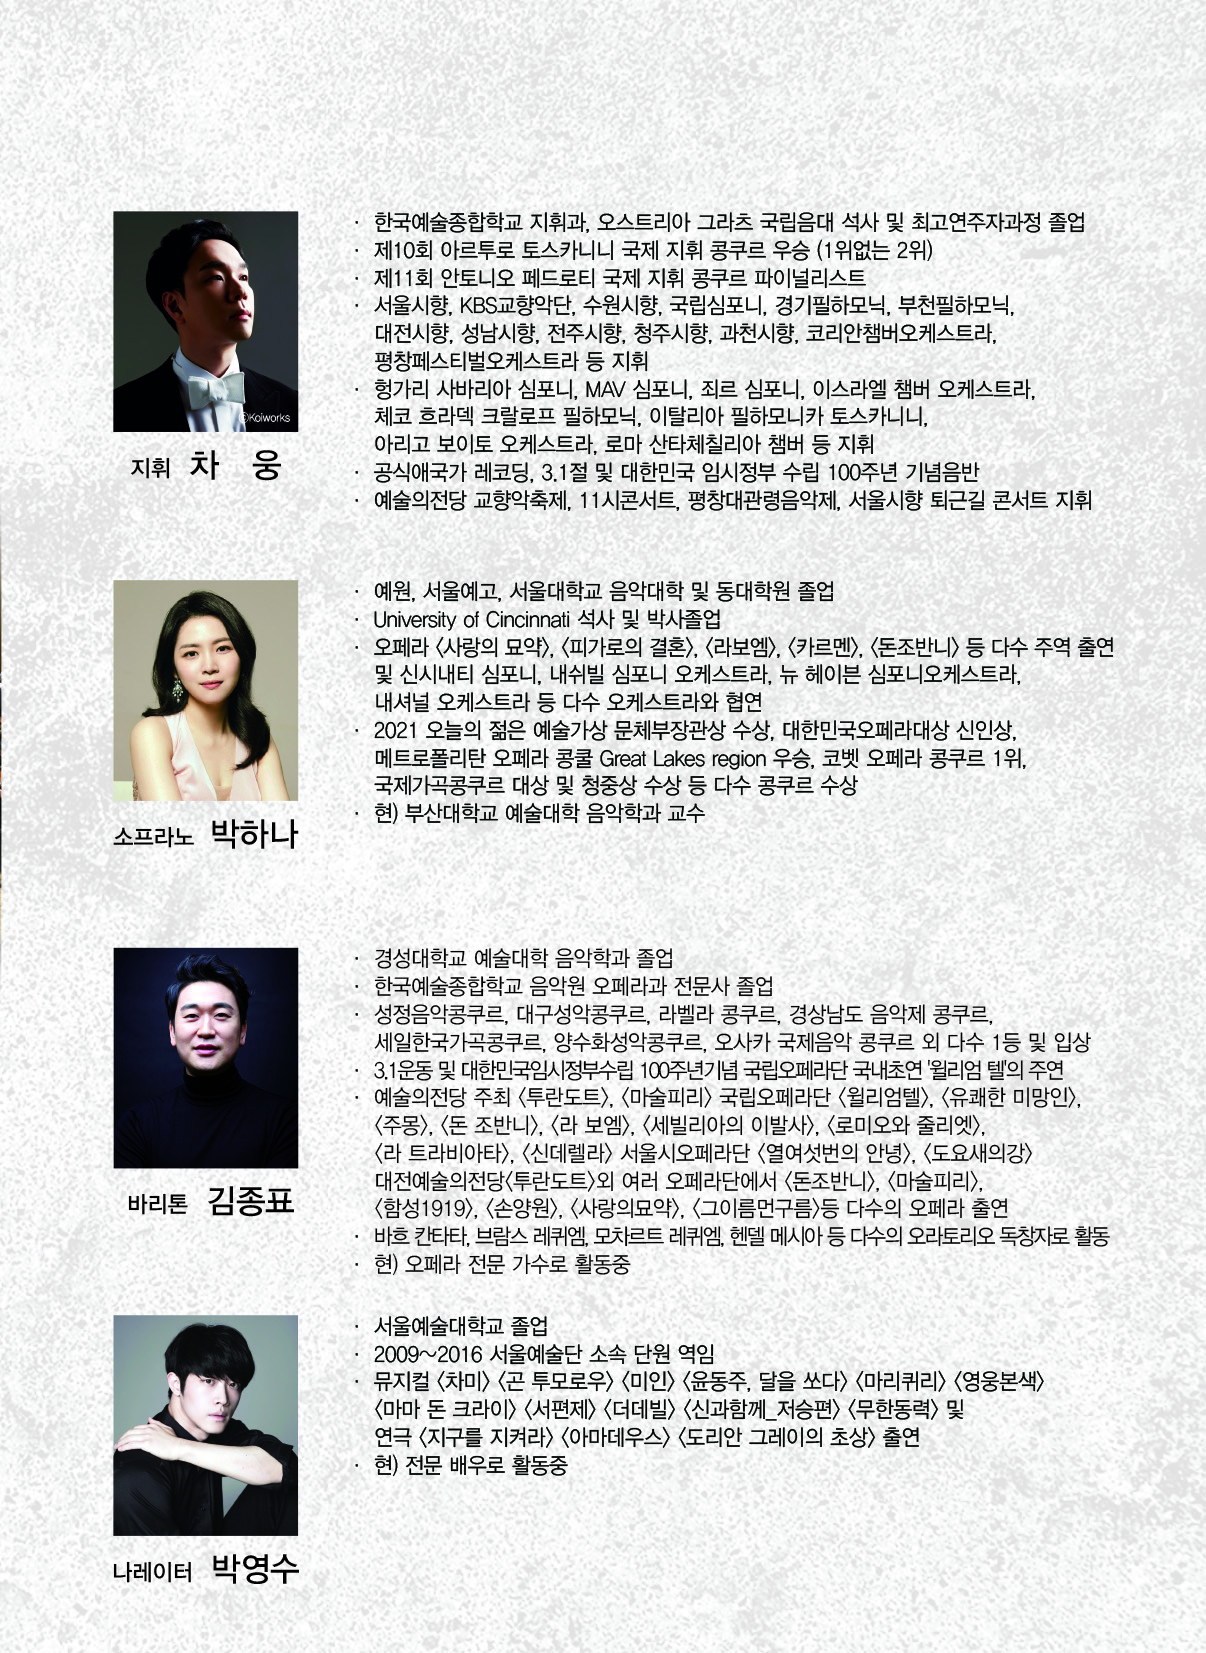 국립심포니오케스트라와 만나는 한국동요와 가곡 "온가족이 함께하는 우리노래"